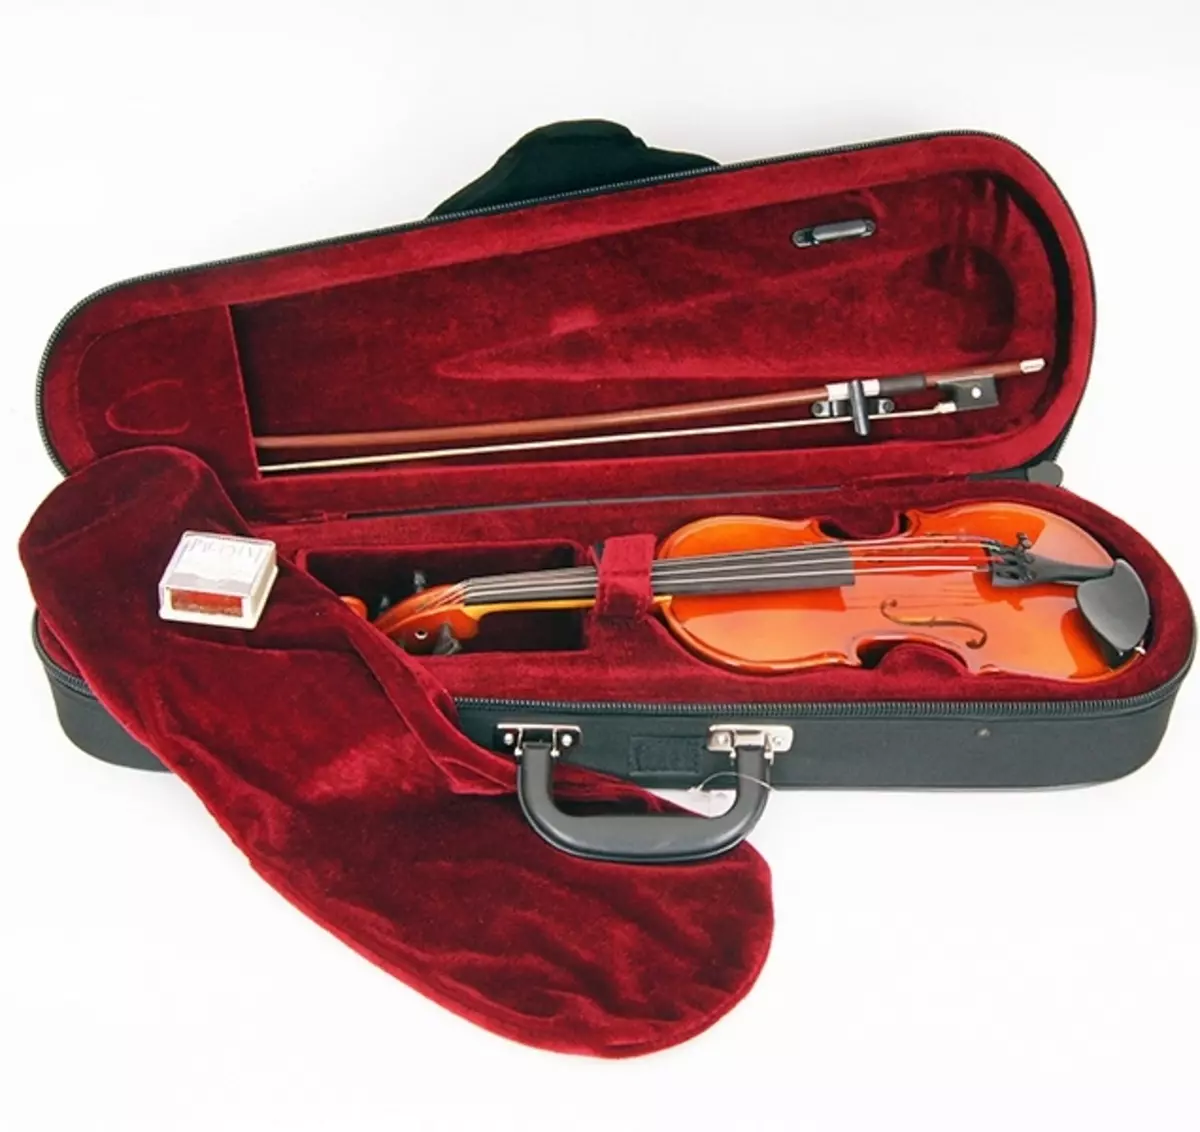 Viiulite puhul: Mis hõlmab säilitavaid viiulid? Liikide ja valikureegli läbivaatamine 25421_8